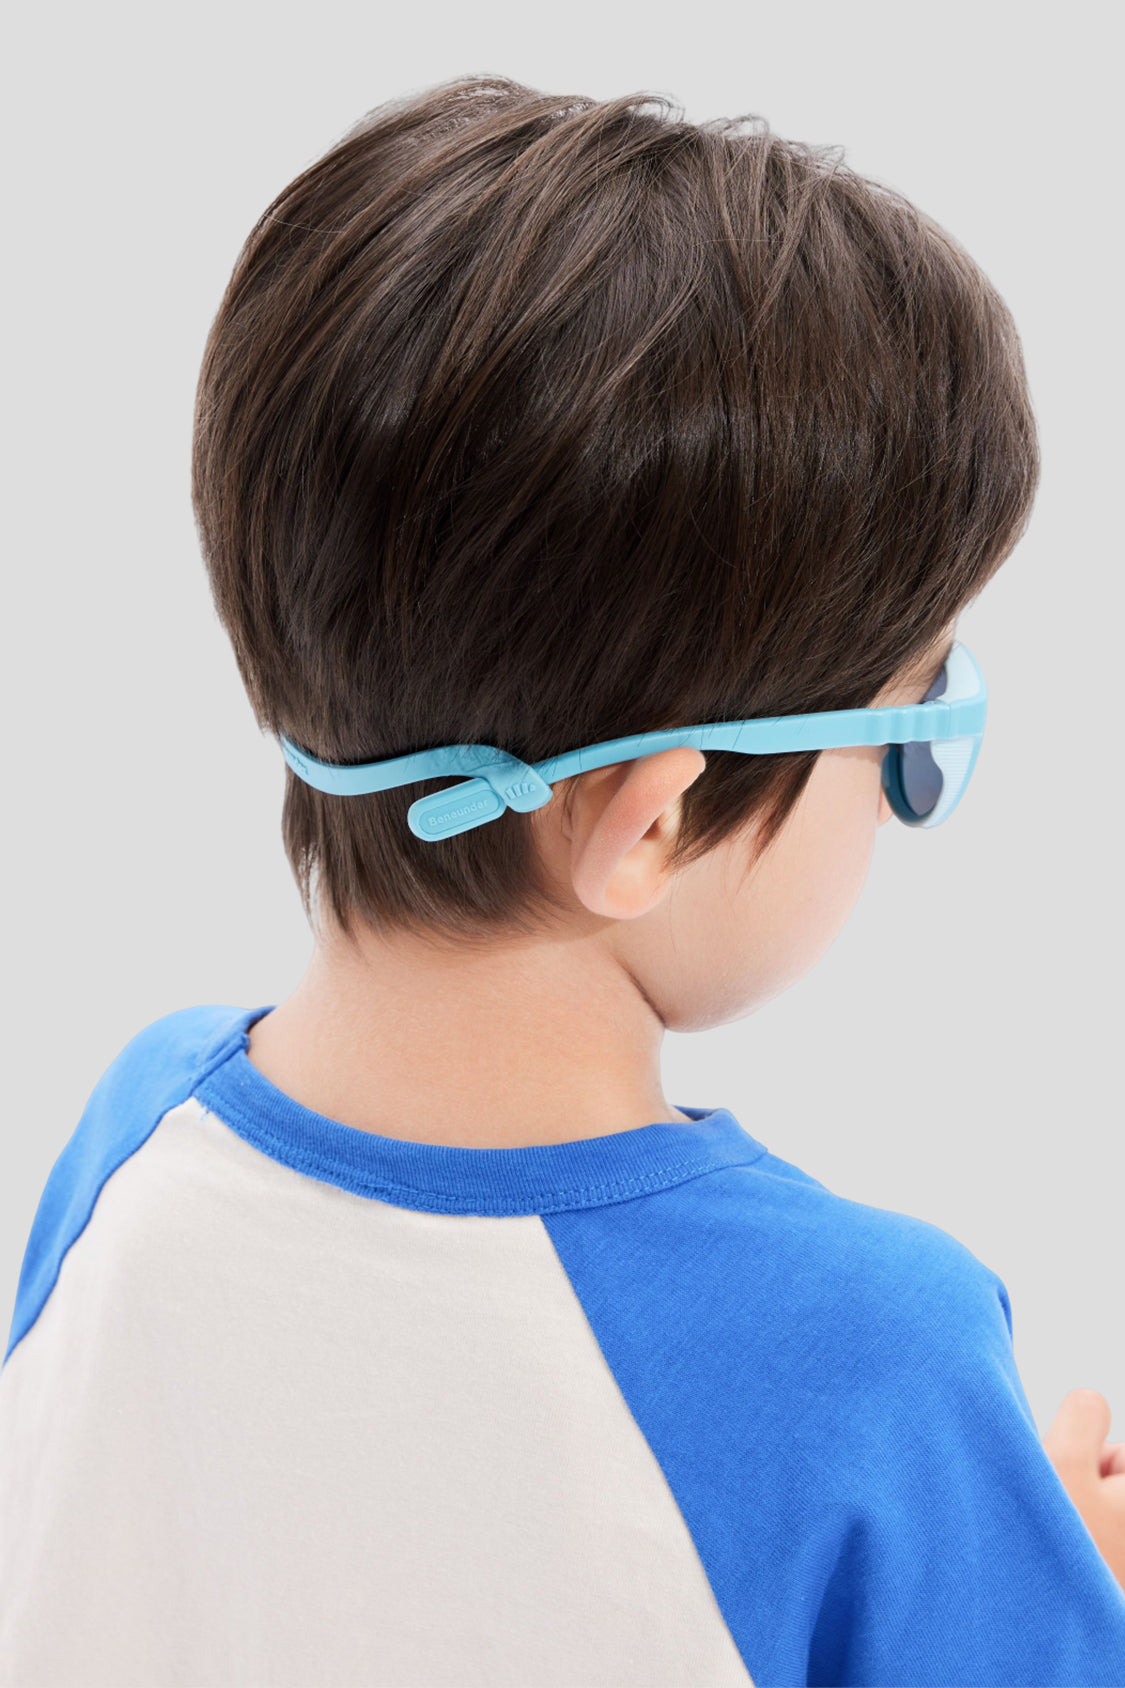 beneunder kid's protective sunglasses UV400 #color_phantom sky blue sky